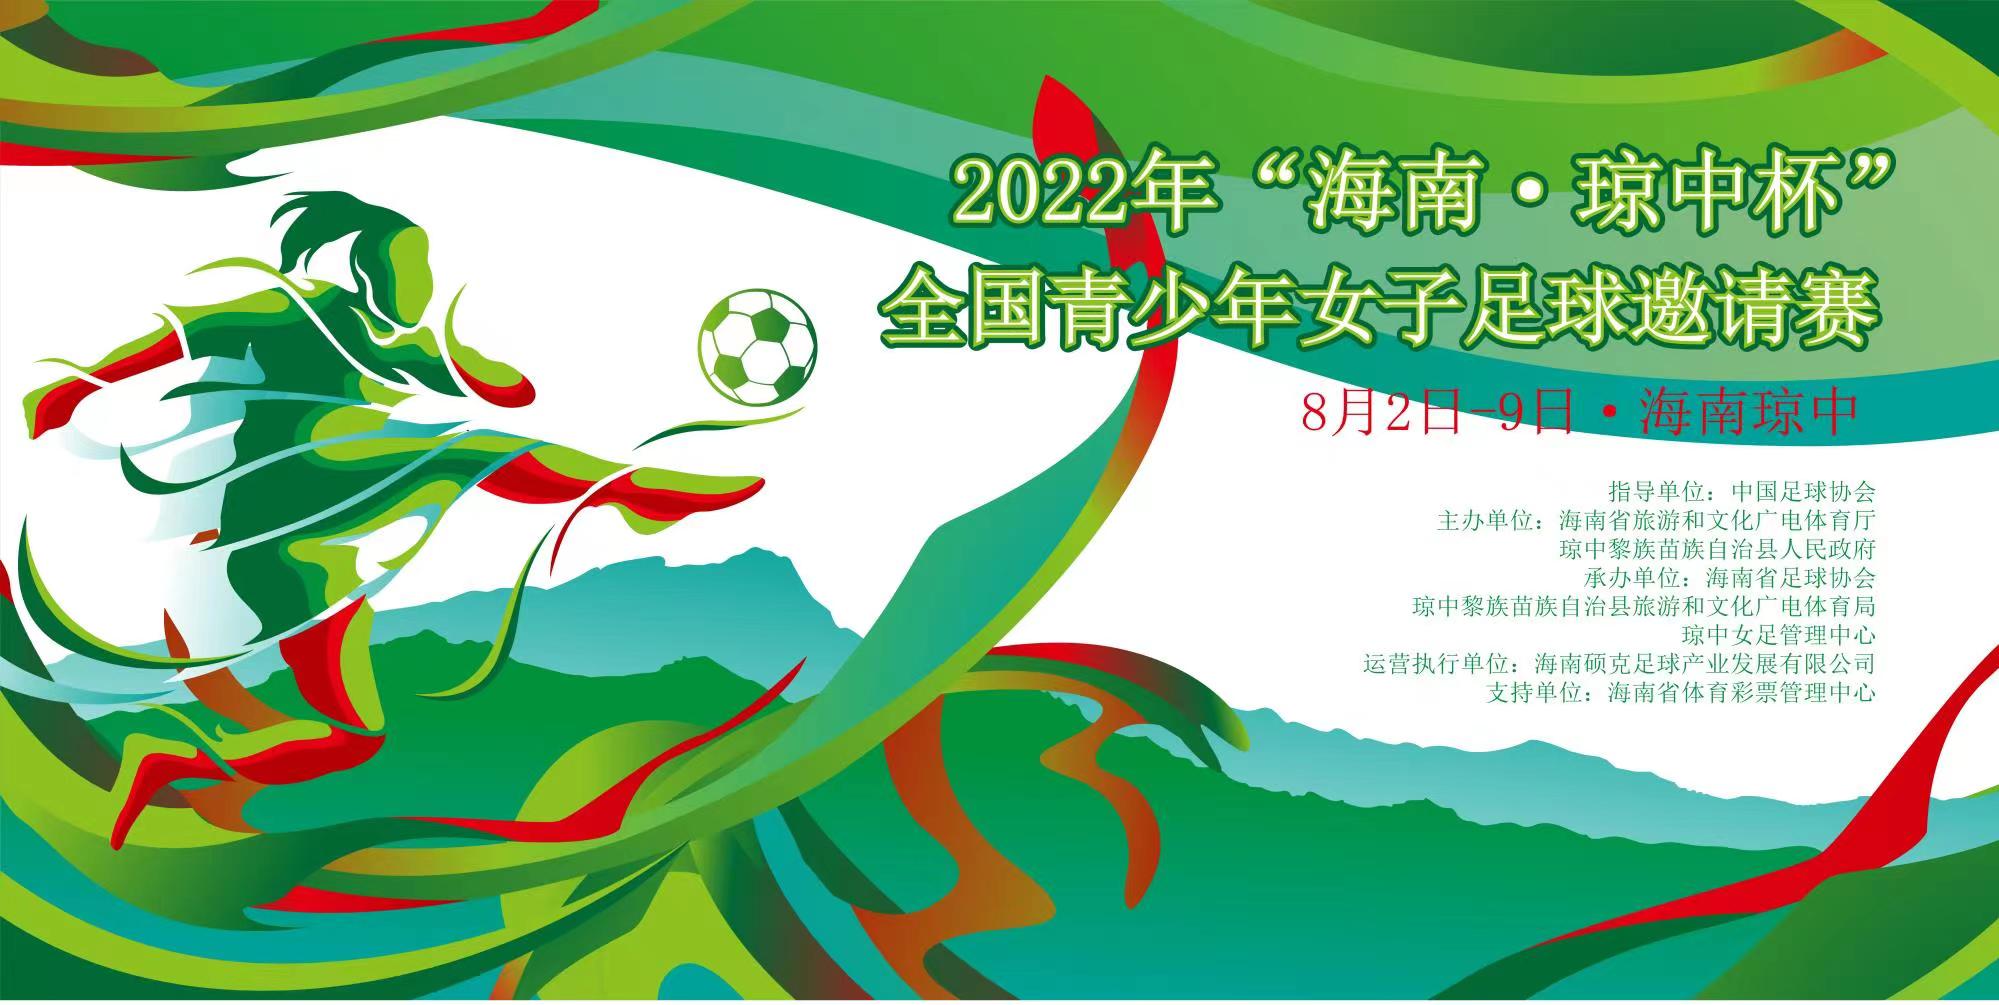 2022年“海南·琼中杯”全国青少年女子足球邀请赛8月4日